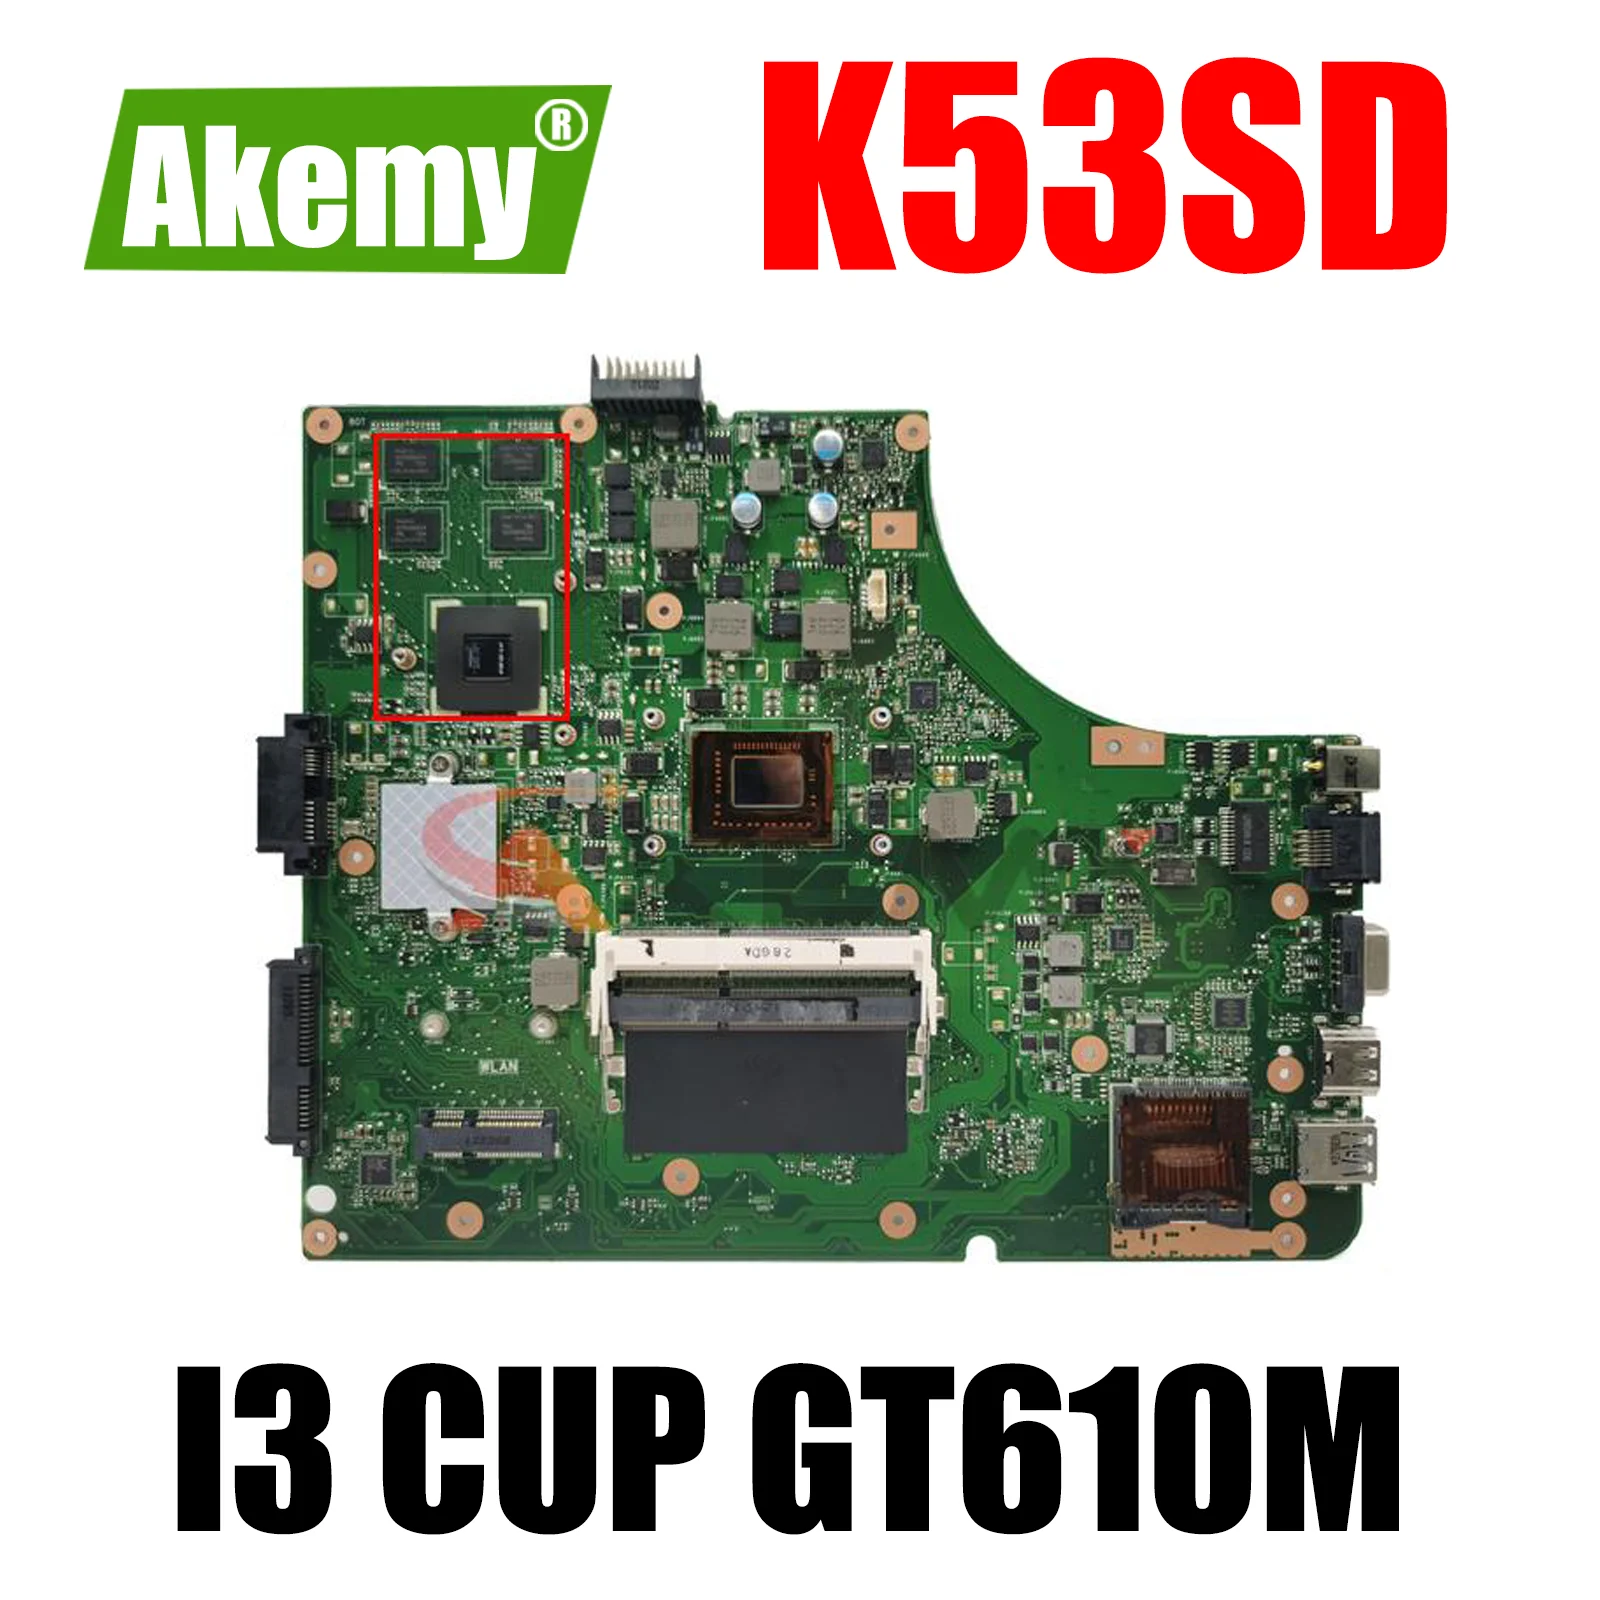 

K53SD Notebook Mainboard For Asus A53S A53E K53E K53S Laptop Computer Motherboard I3 PGA989 GT610M-2G UMA Test Work 100%